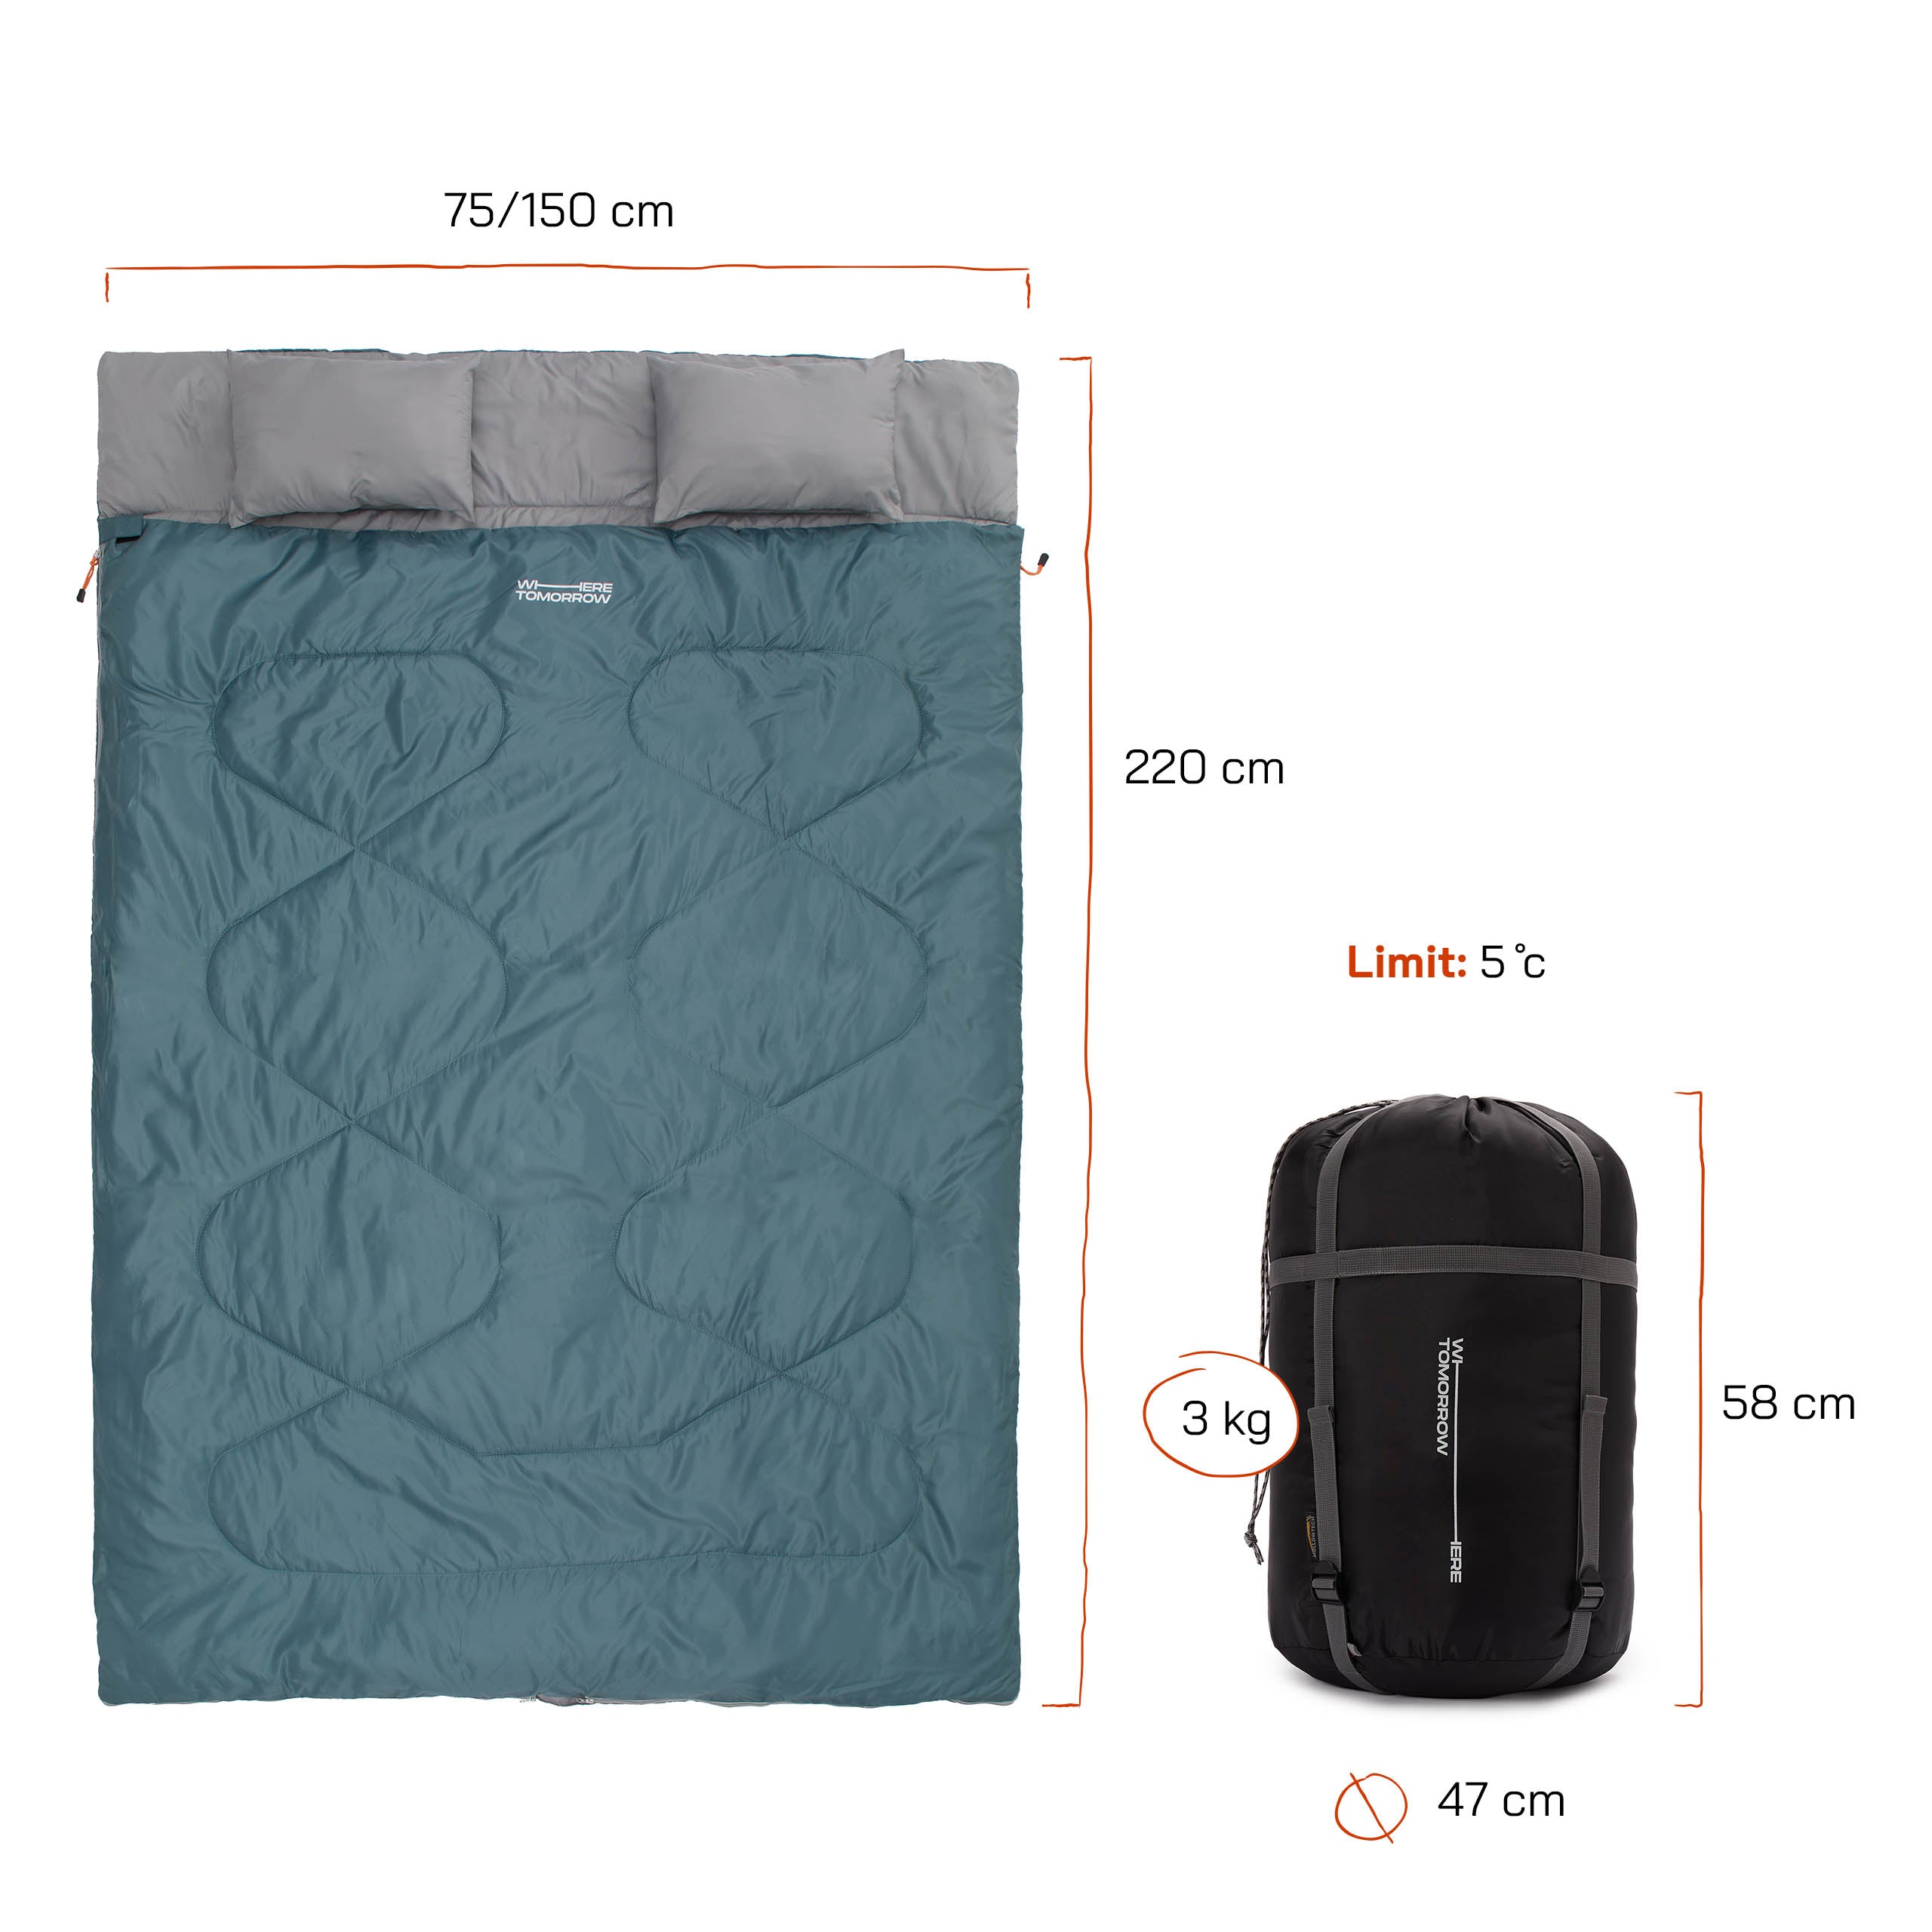 Doppelschlafsack mit Tragetasche - 2-Personen Schlafsack - 190 x 150 cm - Goblinblau